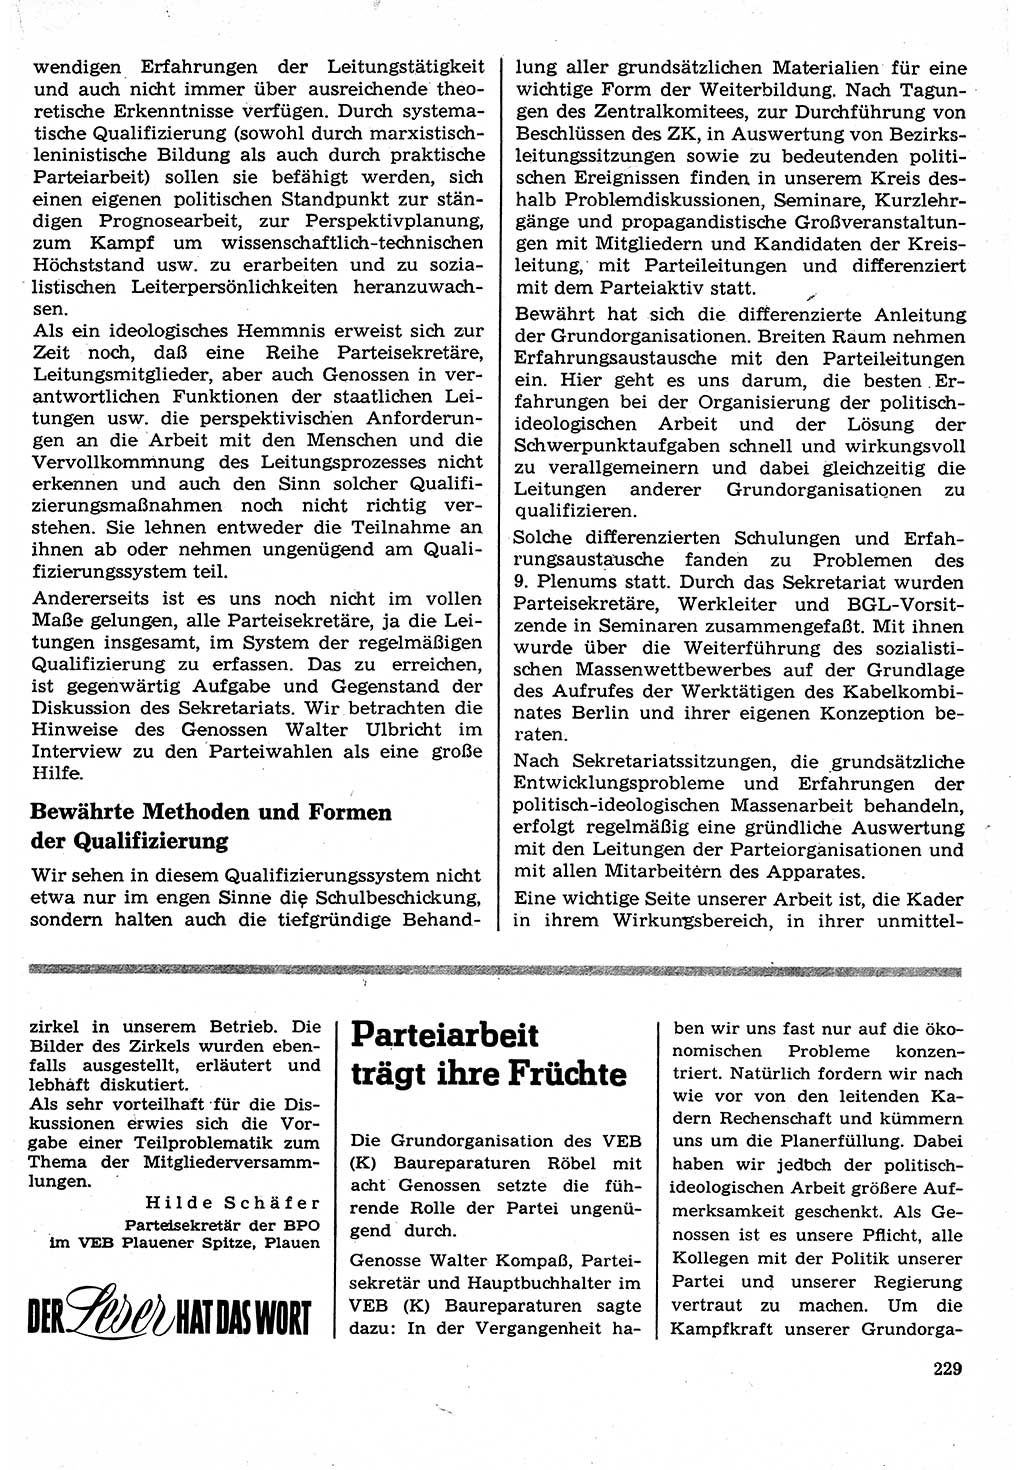 Neuer Weg (NW), Organ des Zentralkomitees (ZK) der SED (Sozialistische Einheitspartei Deutschlands) für Fragen des Parteilebens, 24. Jahrgang [Deutsche Demokratische Republik (DDR)] 1969, Seite 229 (NW ZK SED DDR 1969, S. 229)